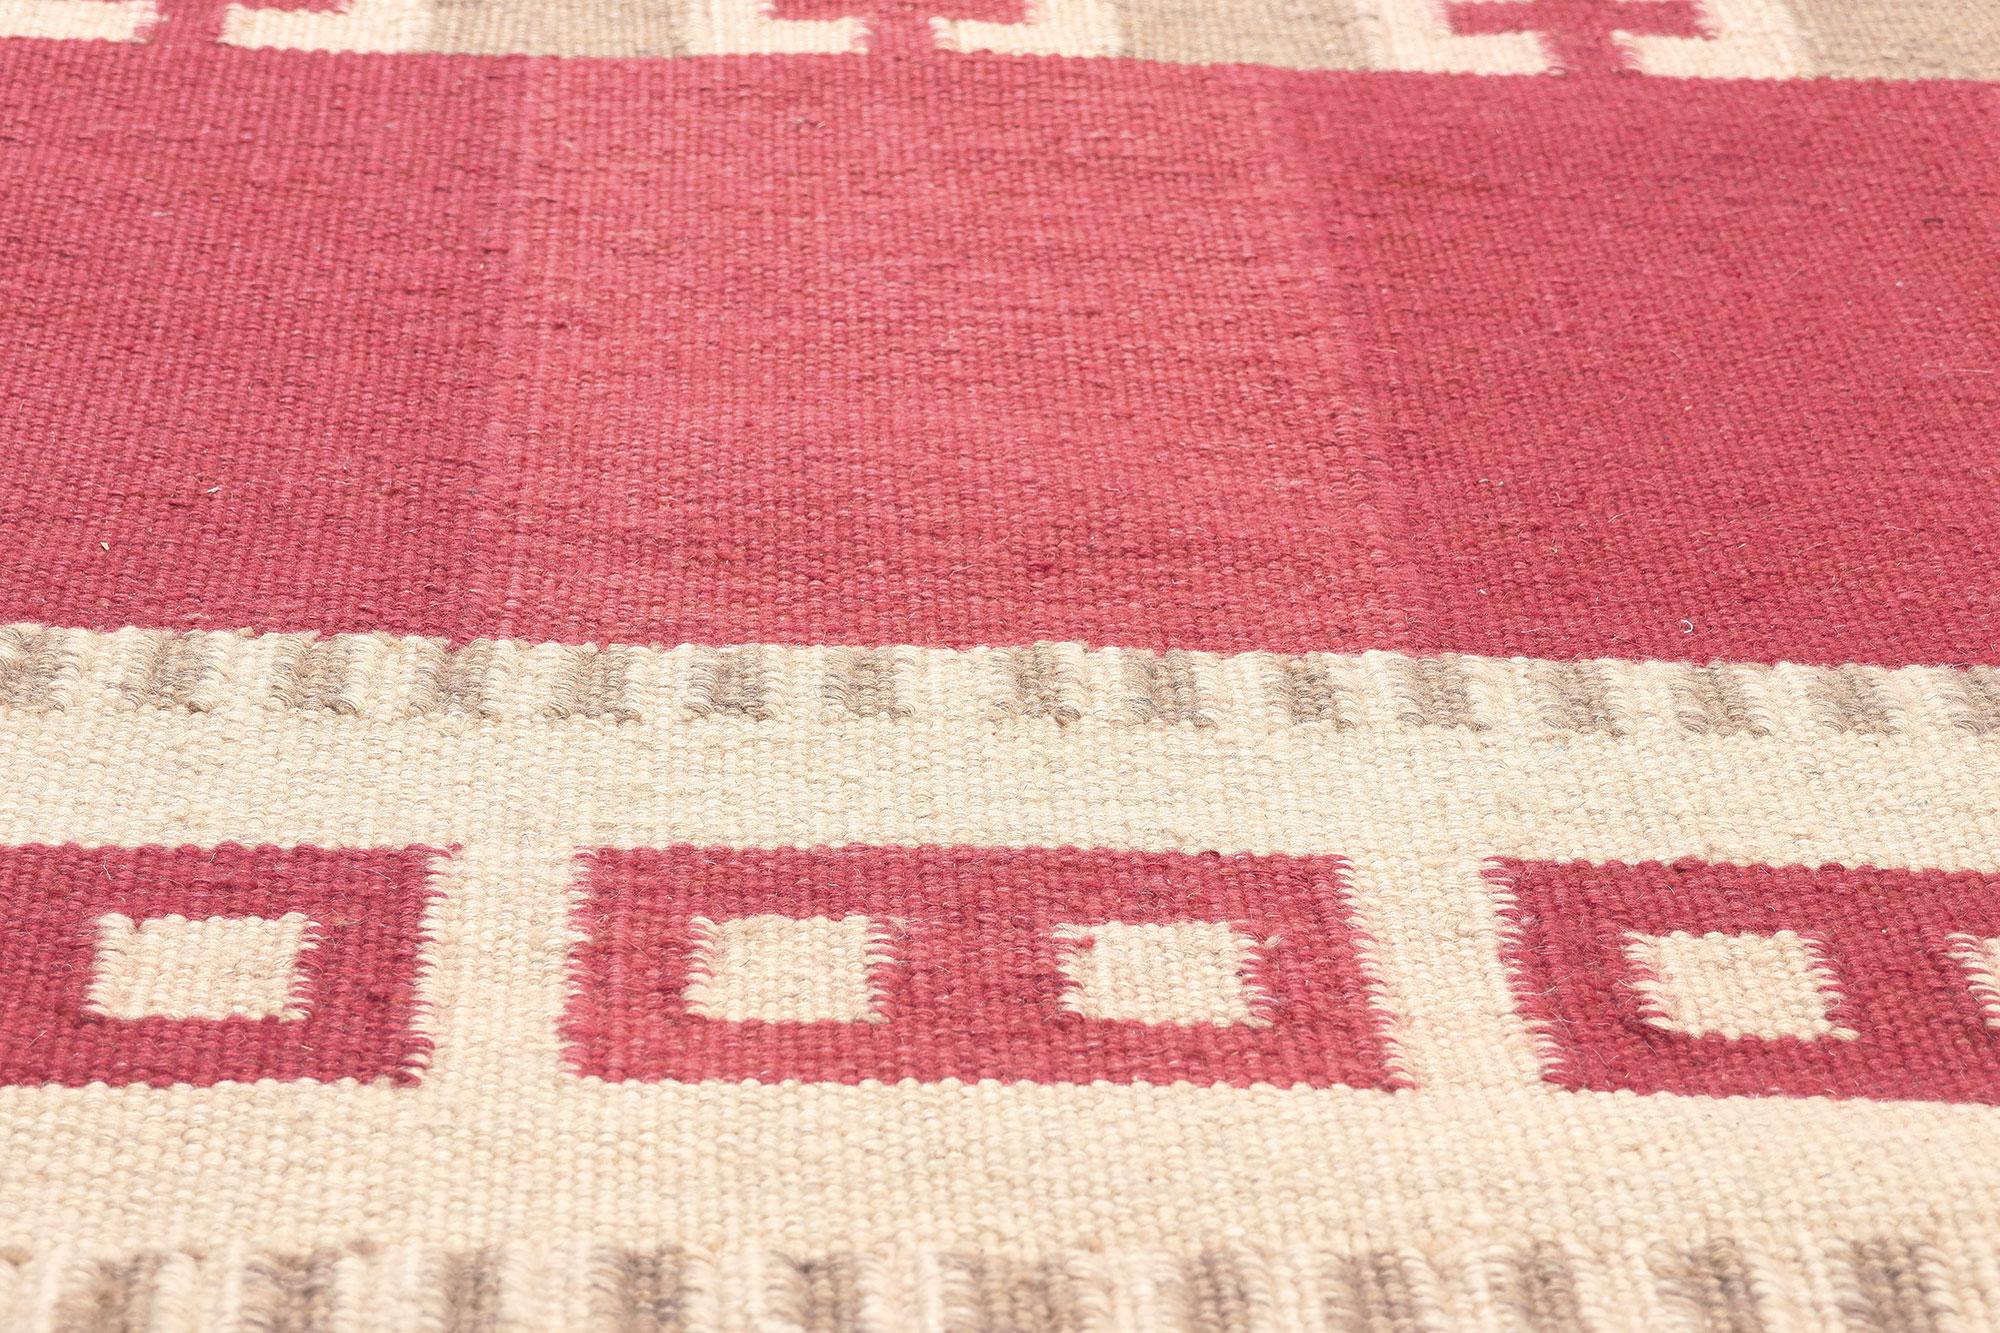 30977 Irma Kronlund Schwedisch inspirierter Kilim-Teppich, 10'05 x 13'08.
Skandinavischer moderner Stil trifft auf Ornithologie in diesem handgewebten, schwedisch inspirierten Kelimteppich aus Wolle. Das auffällige geometrische Design und die